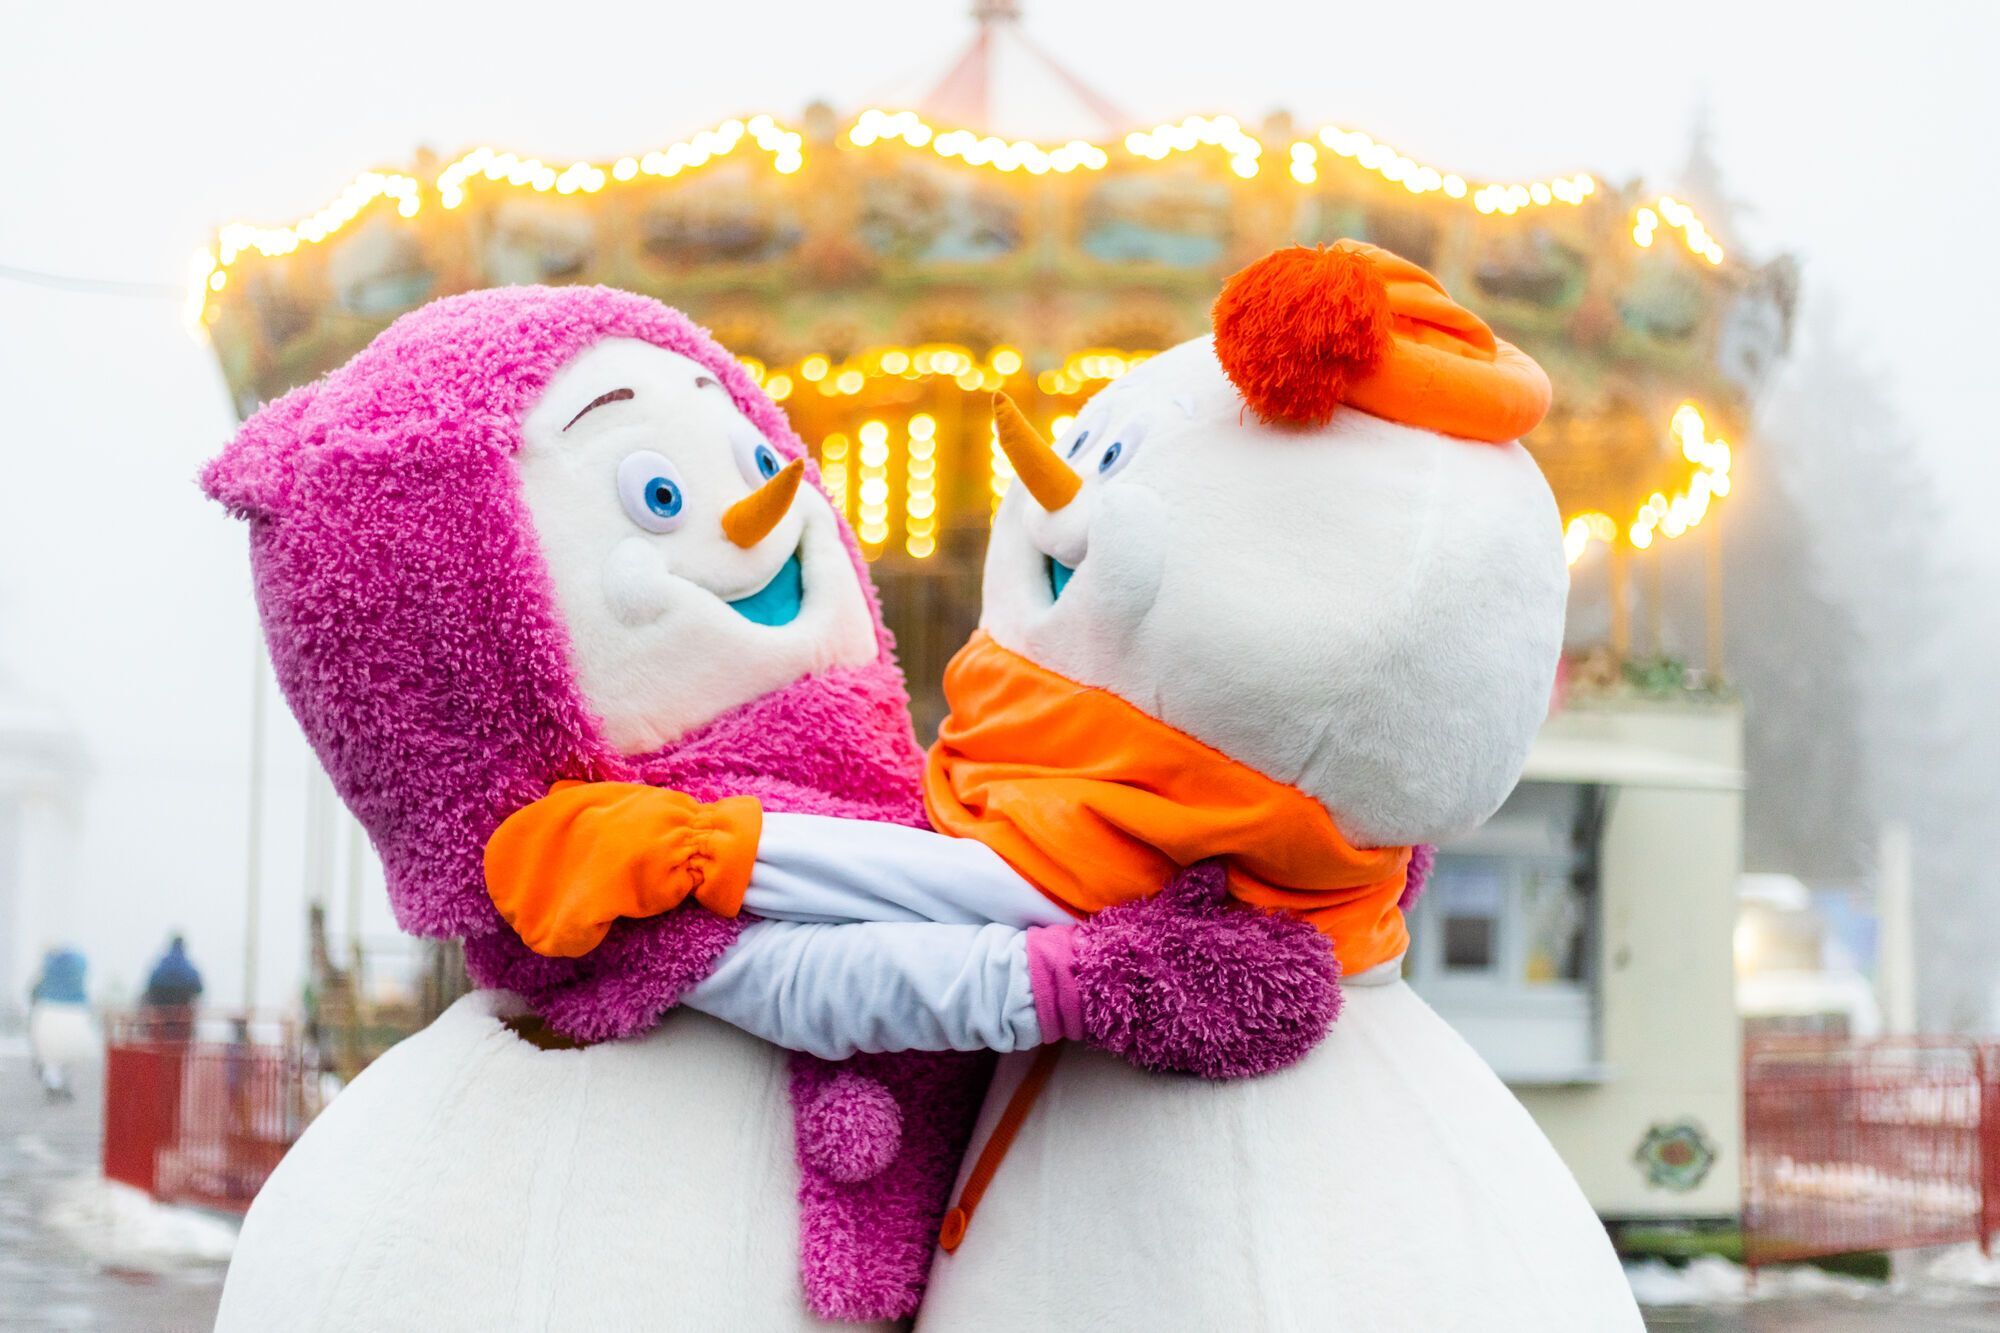 Ковзанка, крижані скульптури, Санта та фольклорні вистави: що готує "Зимова Країна" на ВДНГ у Києві